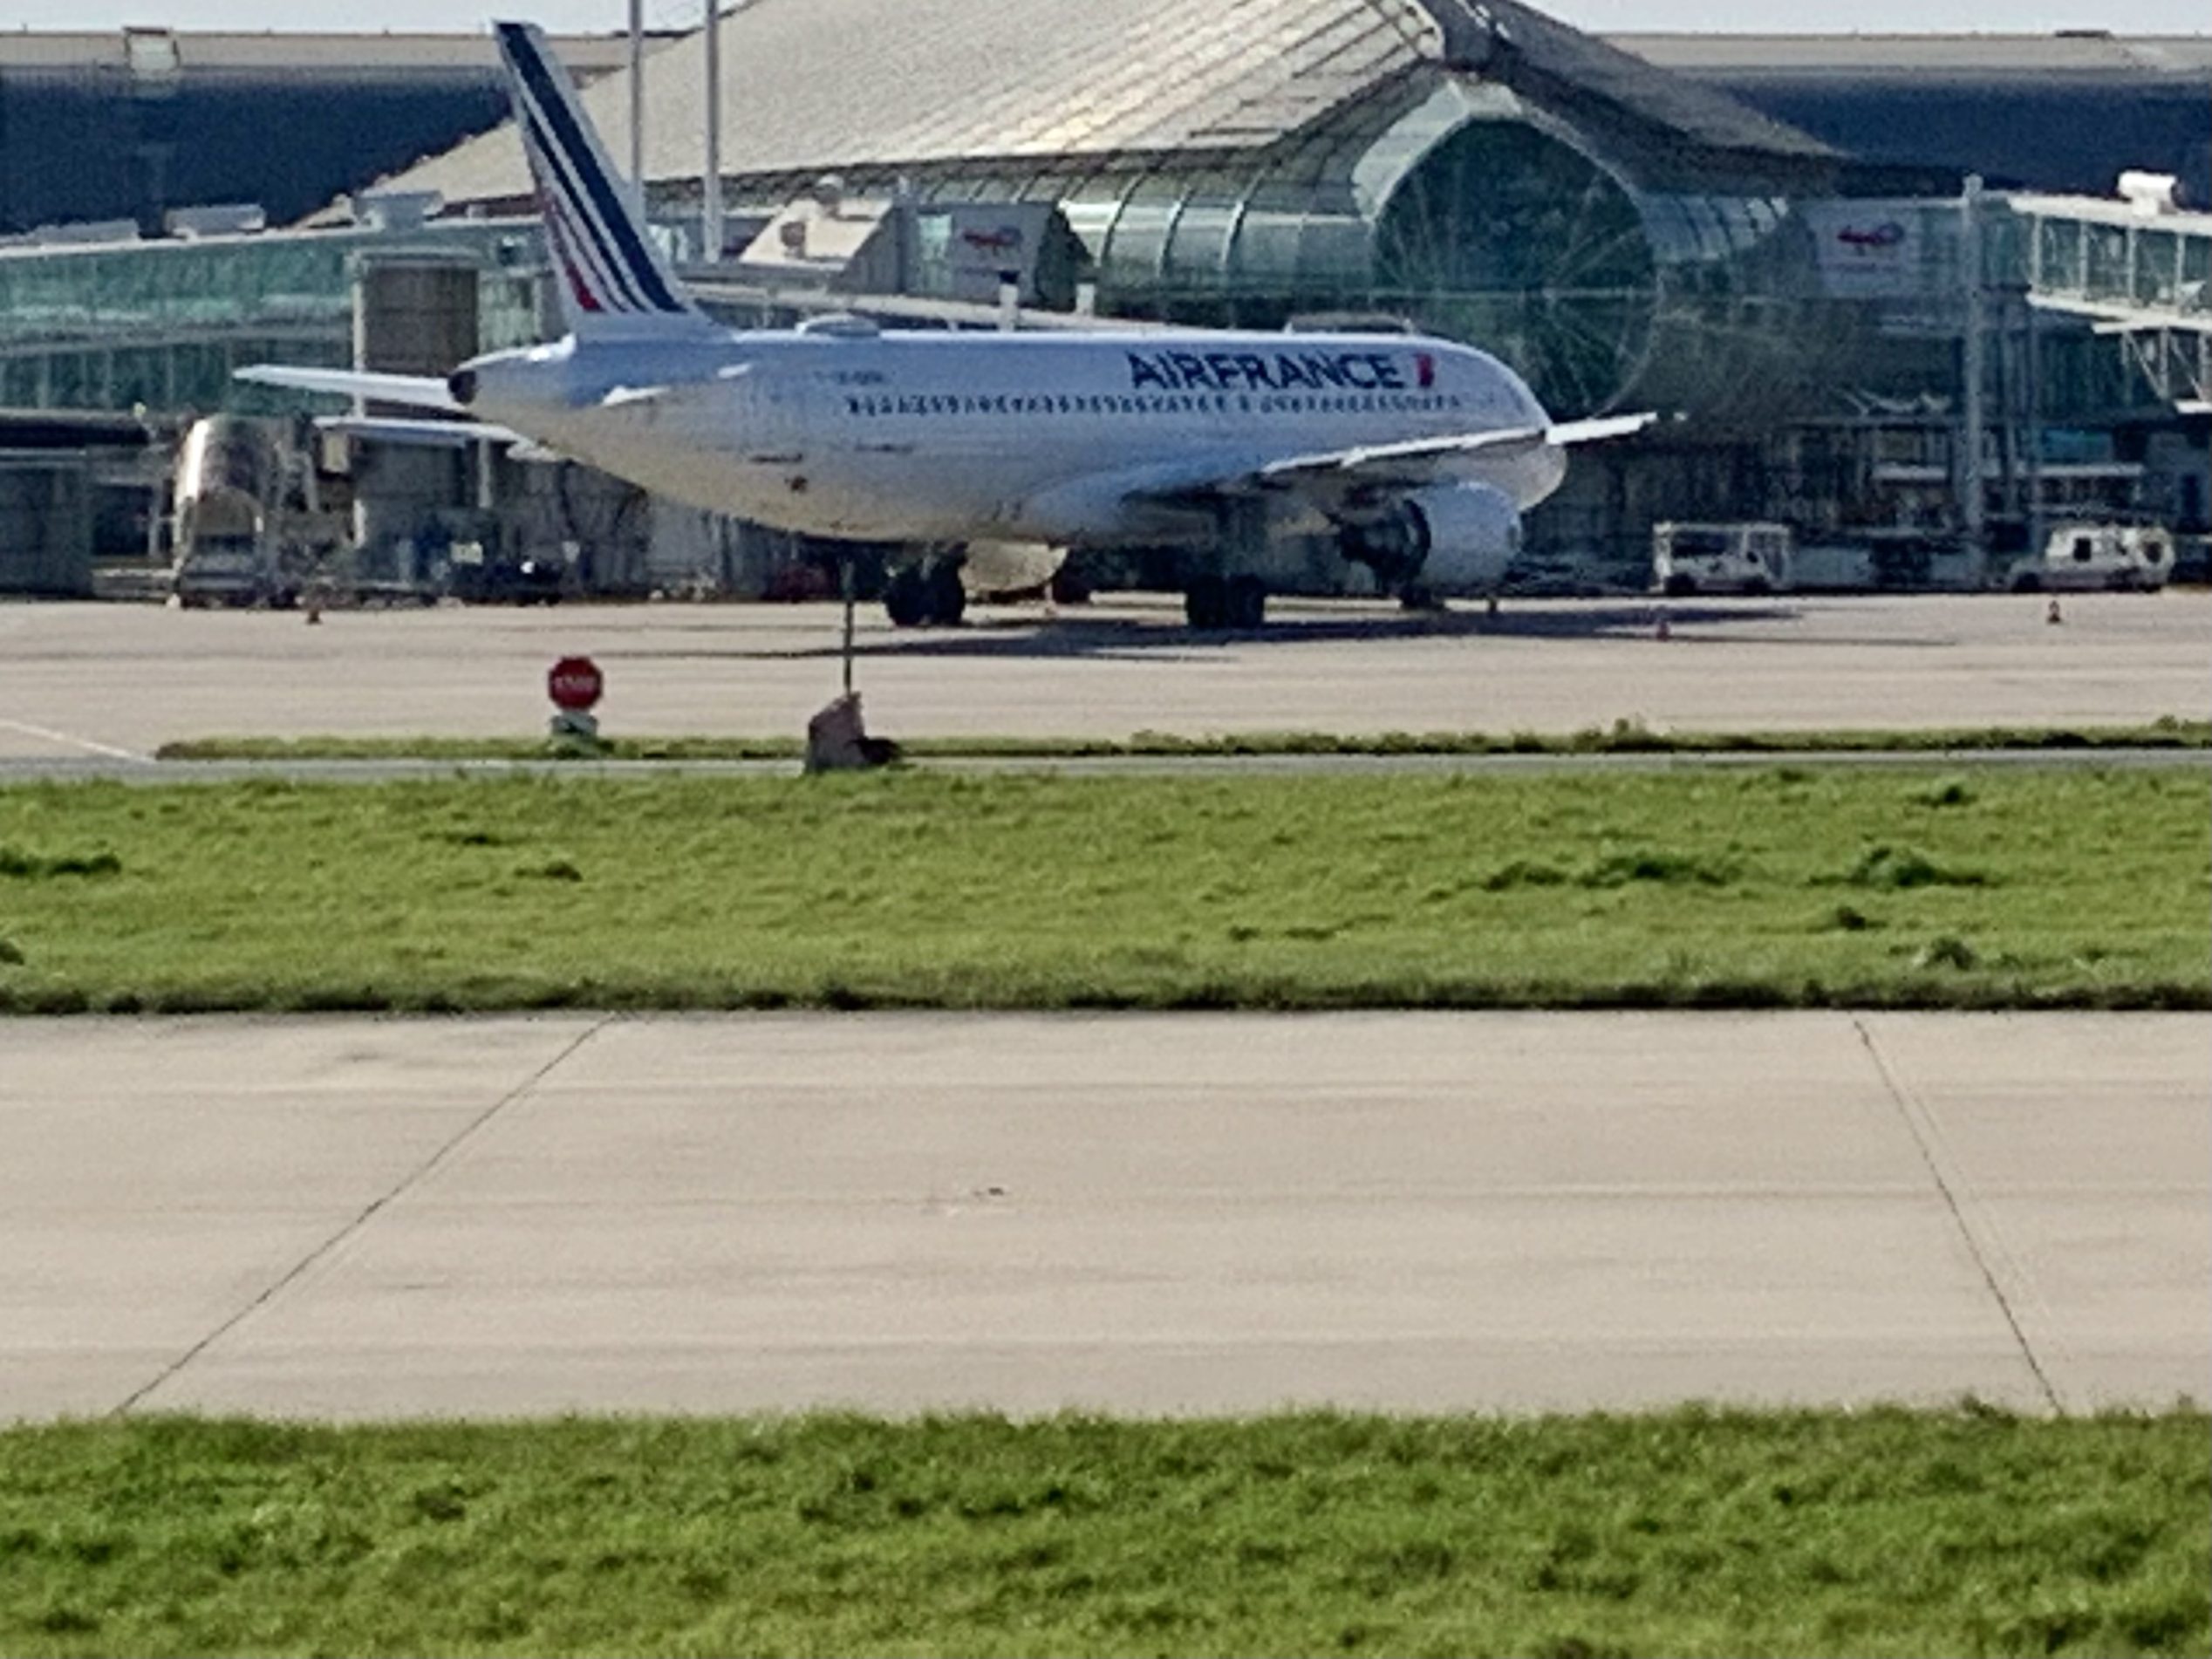 Air France at CDG